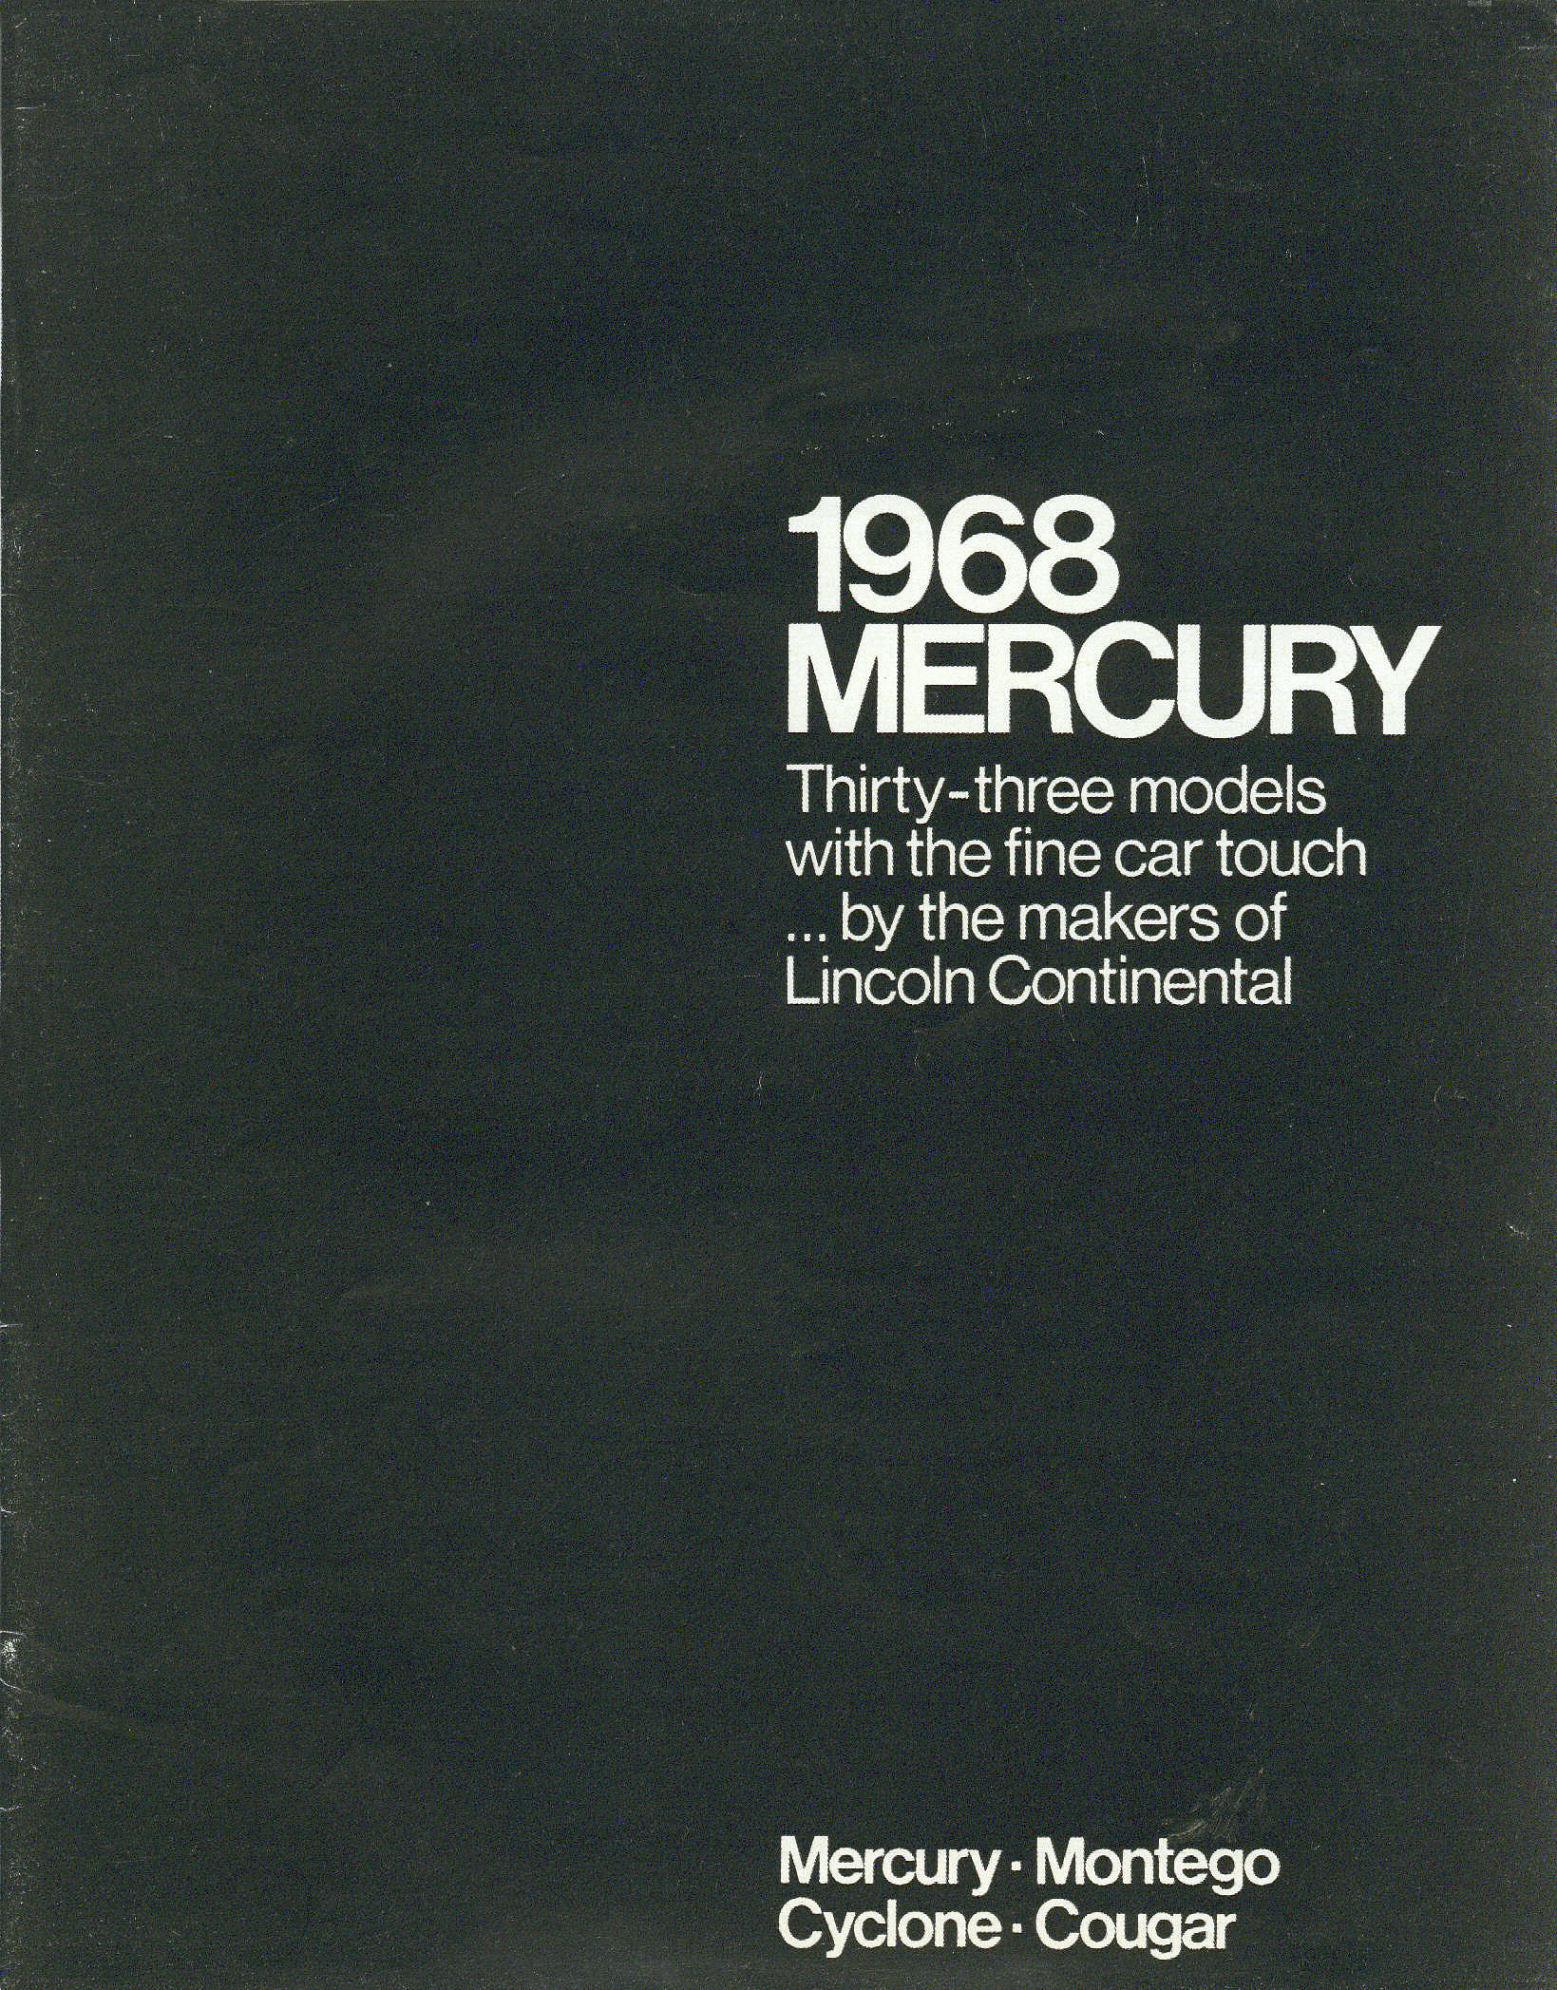 1968_Mercury_Full_Line-01